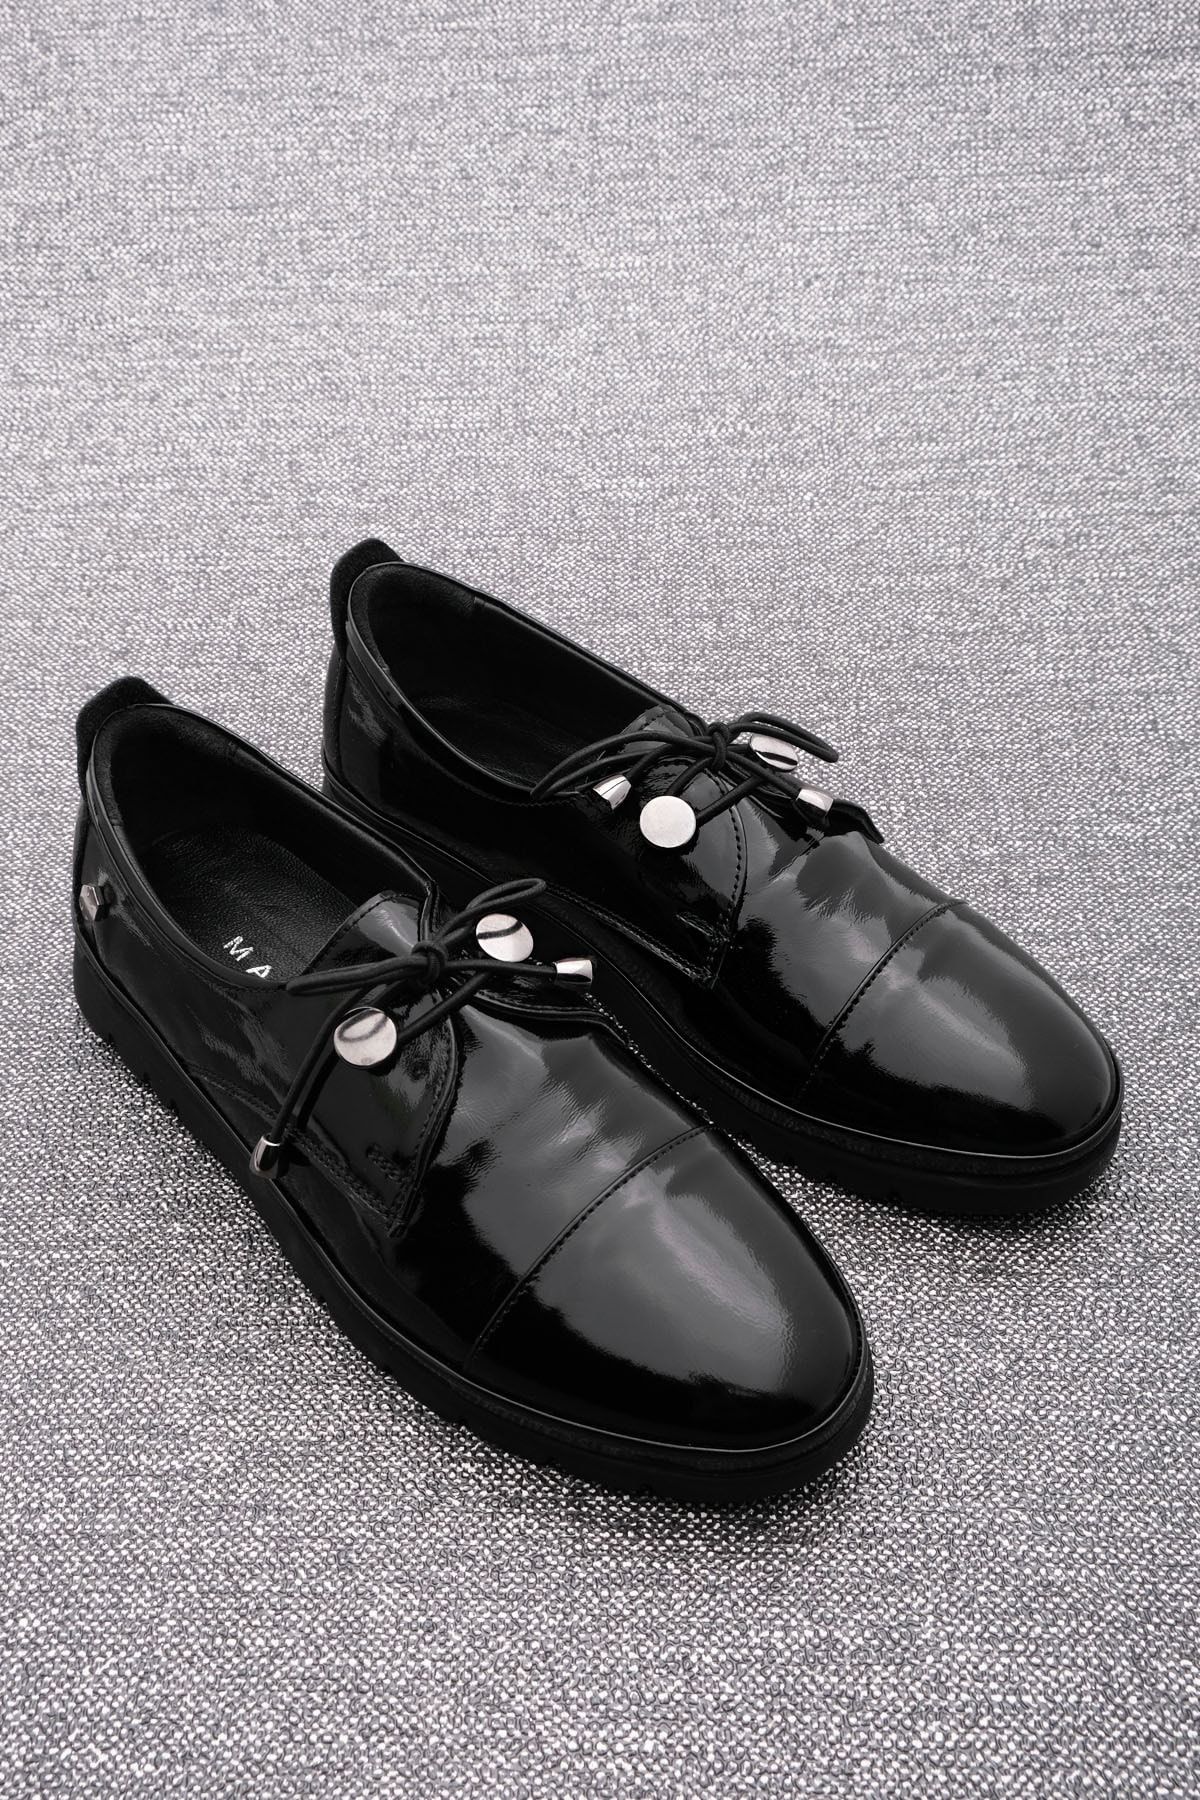 Marjin Kadın Hakiki Deri Comfort Günlük Ayakkabı Bağcıklı Demas siyah Rugan